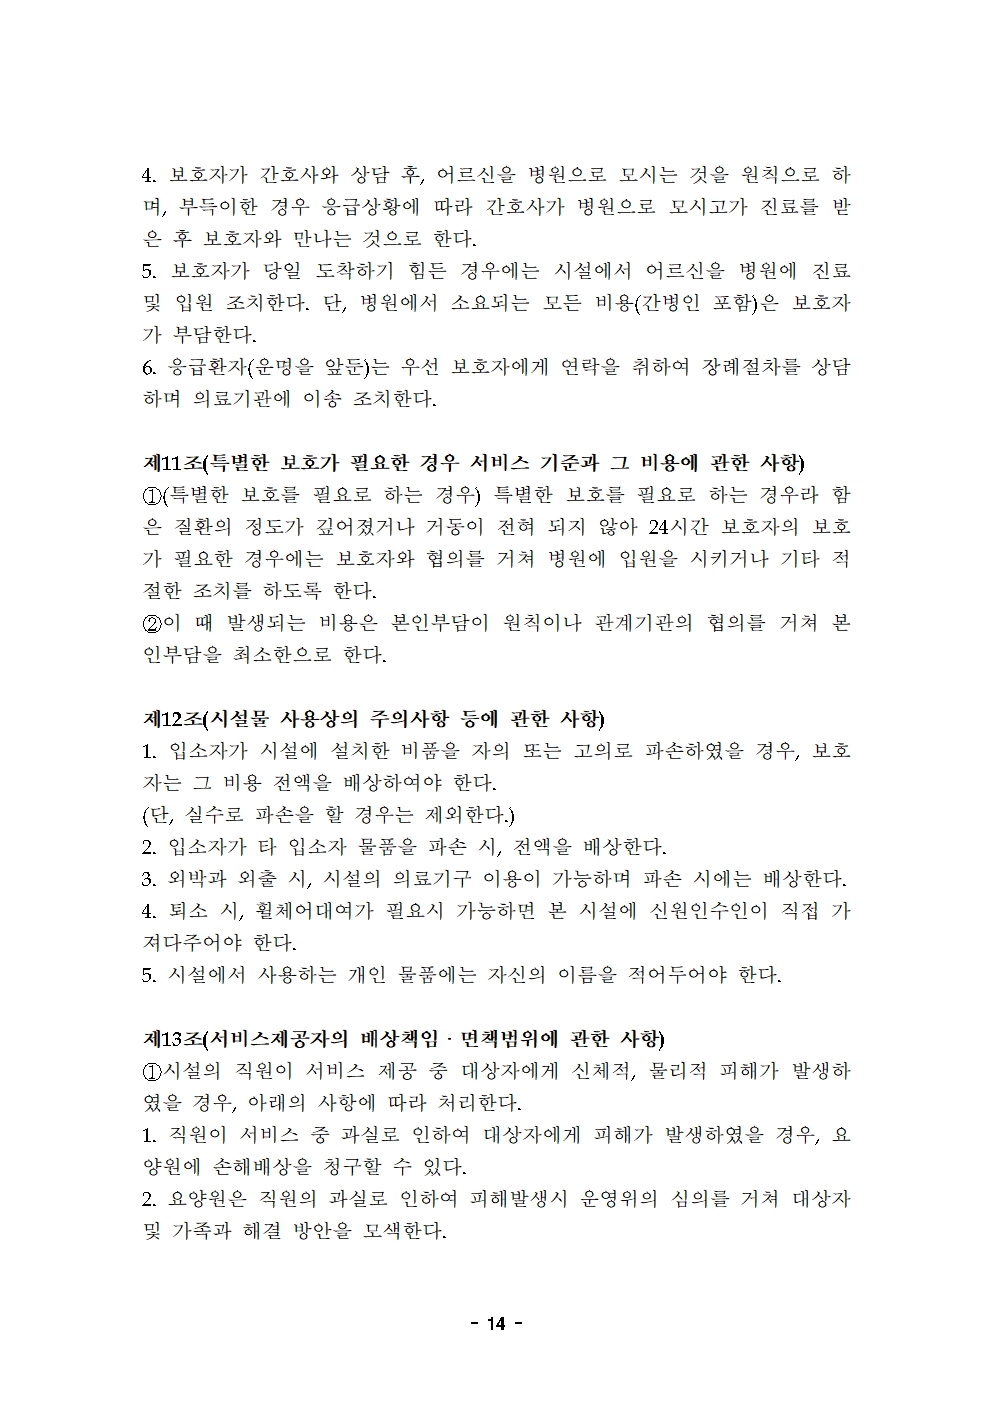 10 2022운영규정(최종)-늘푸른요양원20220101014.jpg